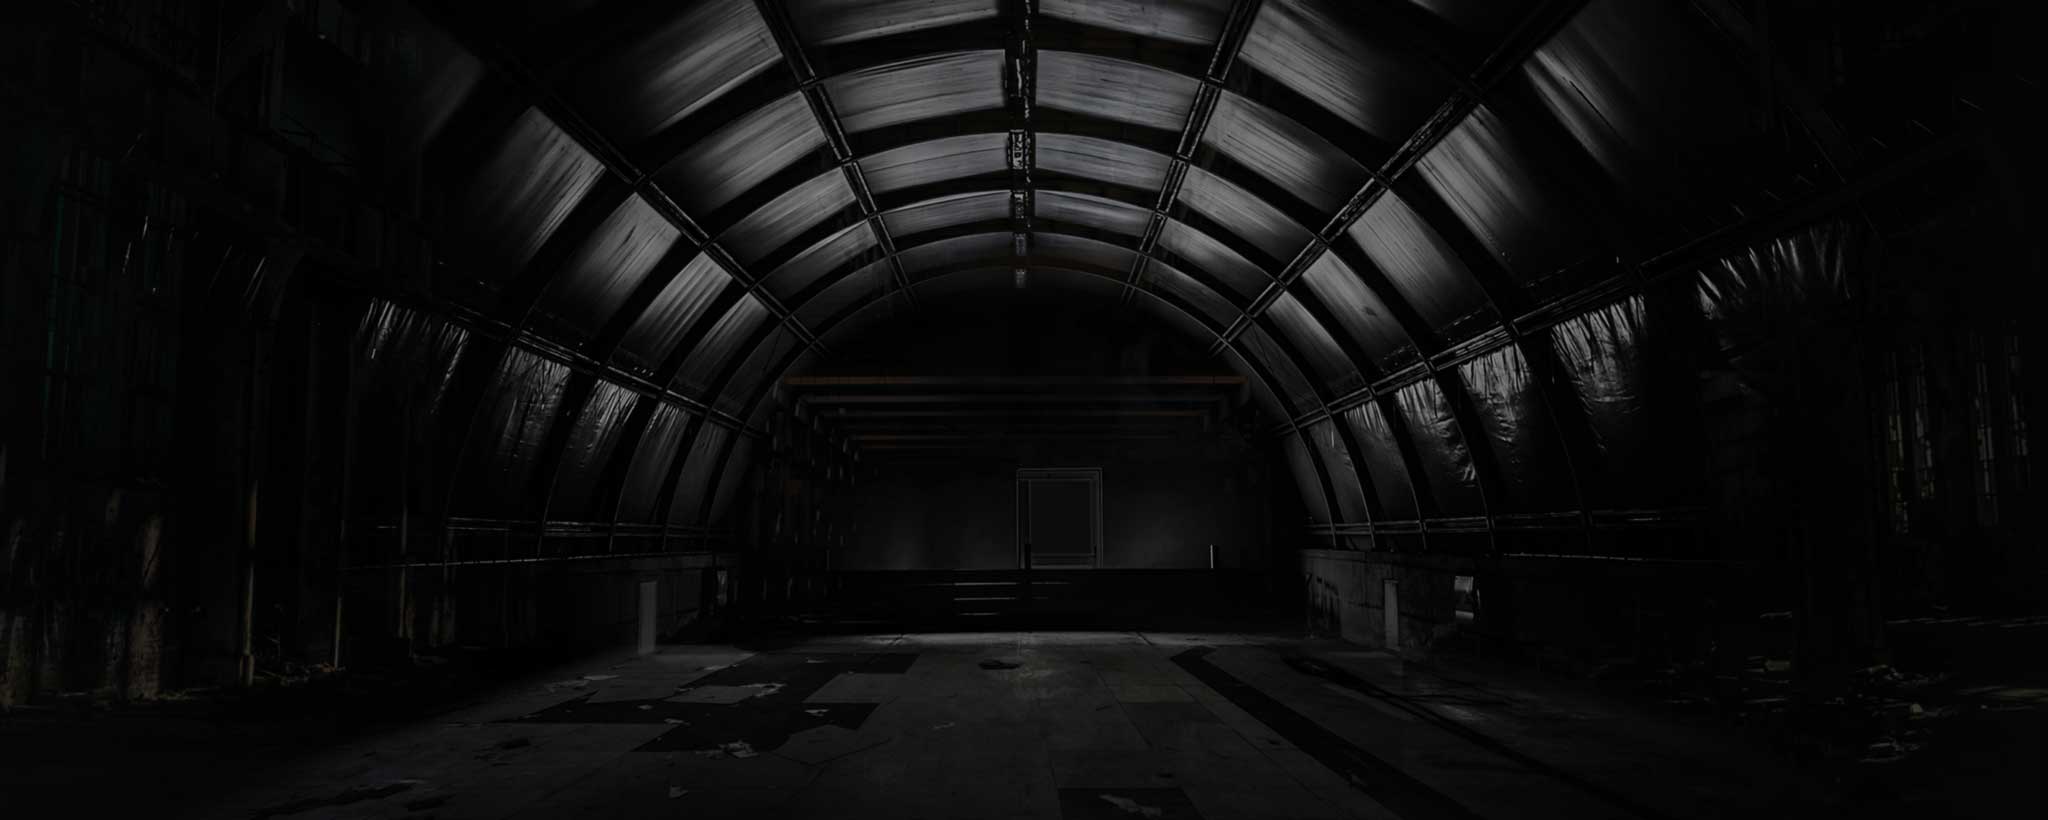 'Large dark creepy room'